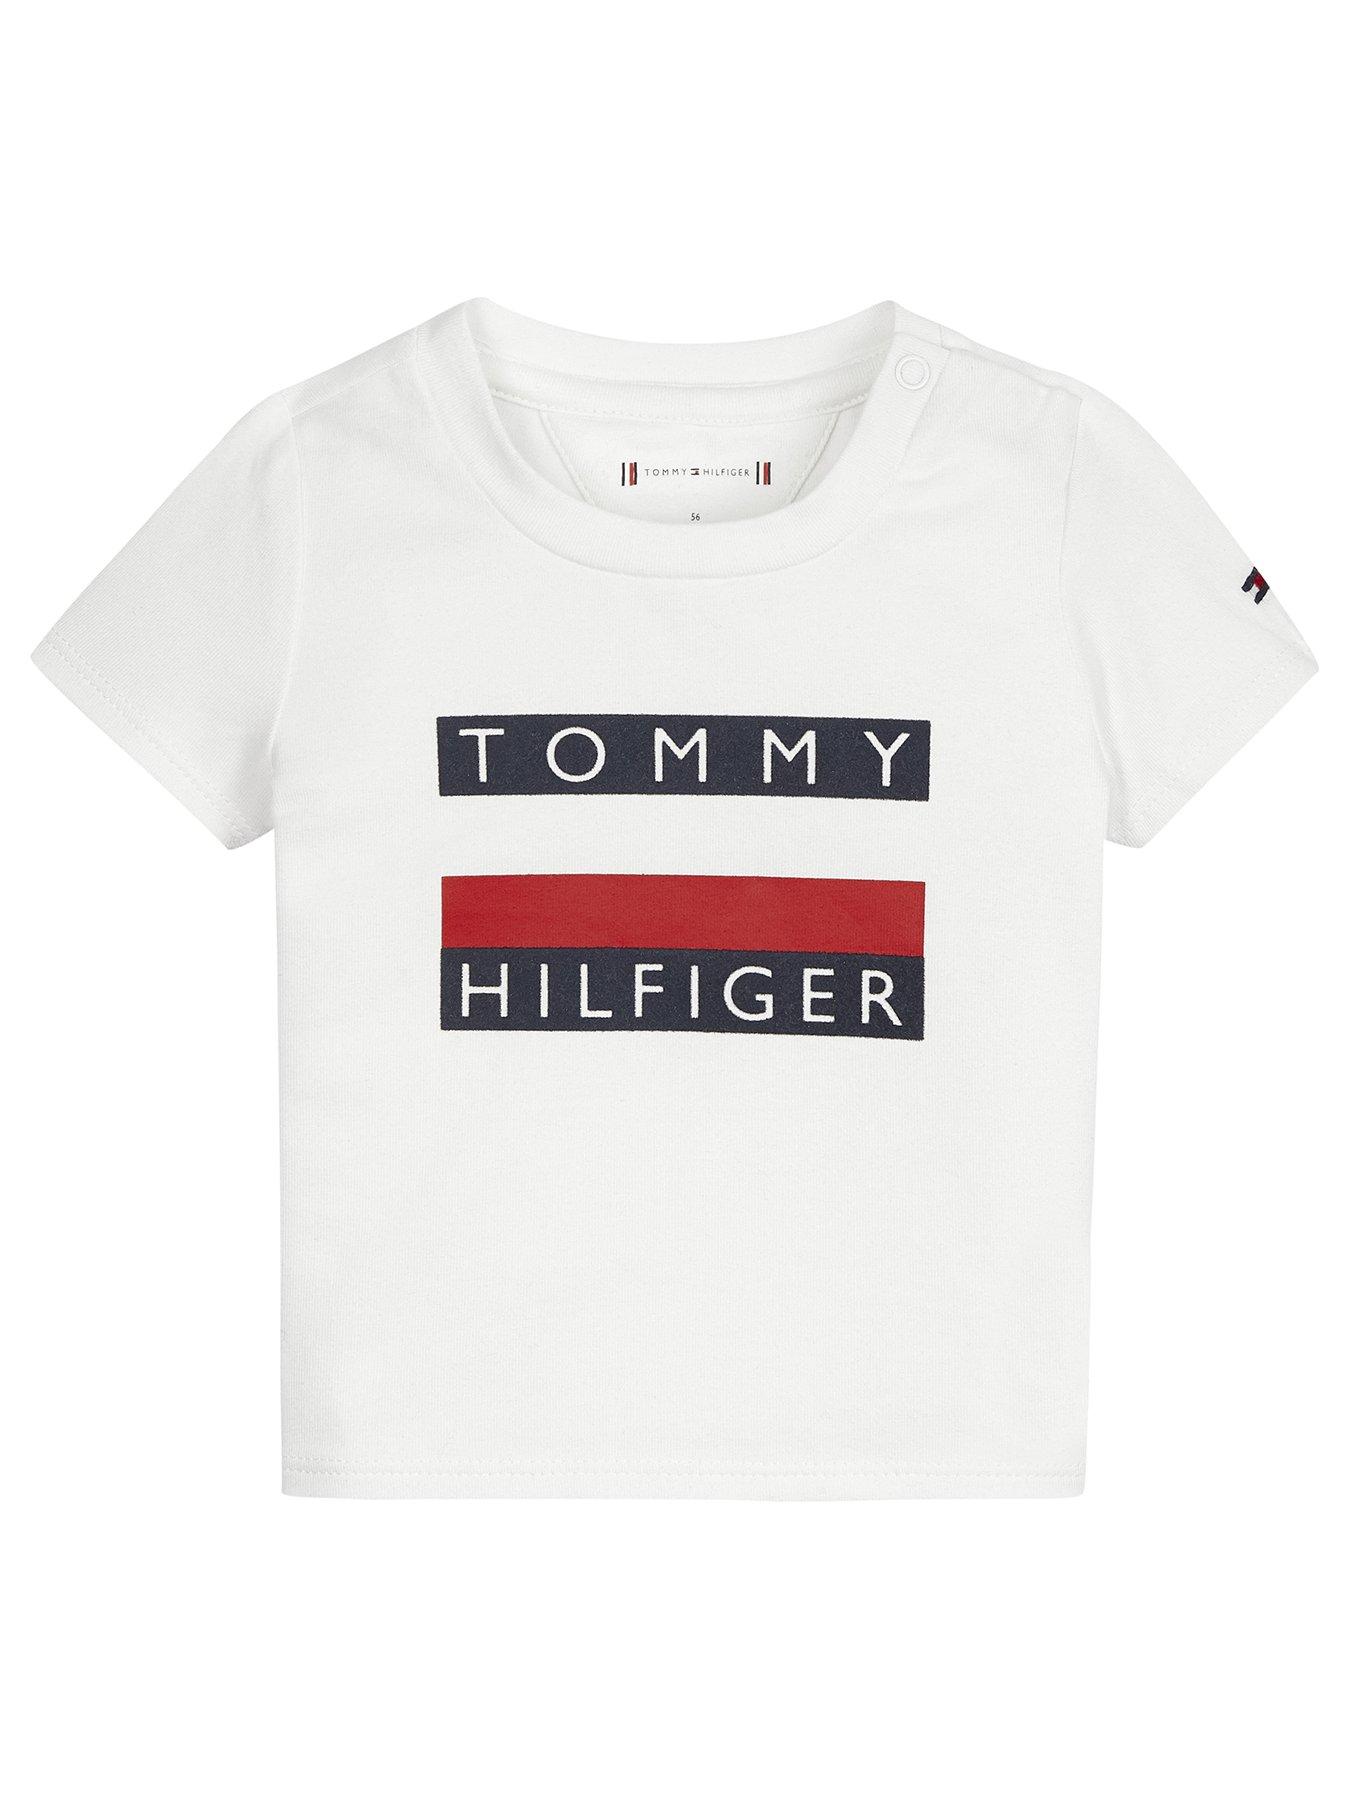 boys tommy hilfiger tshirt